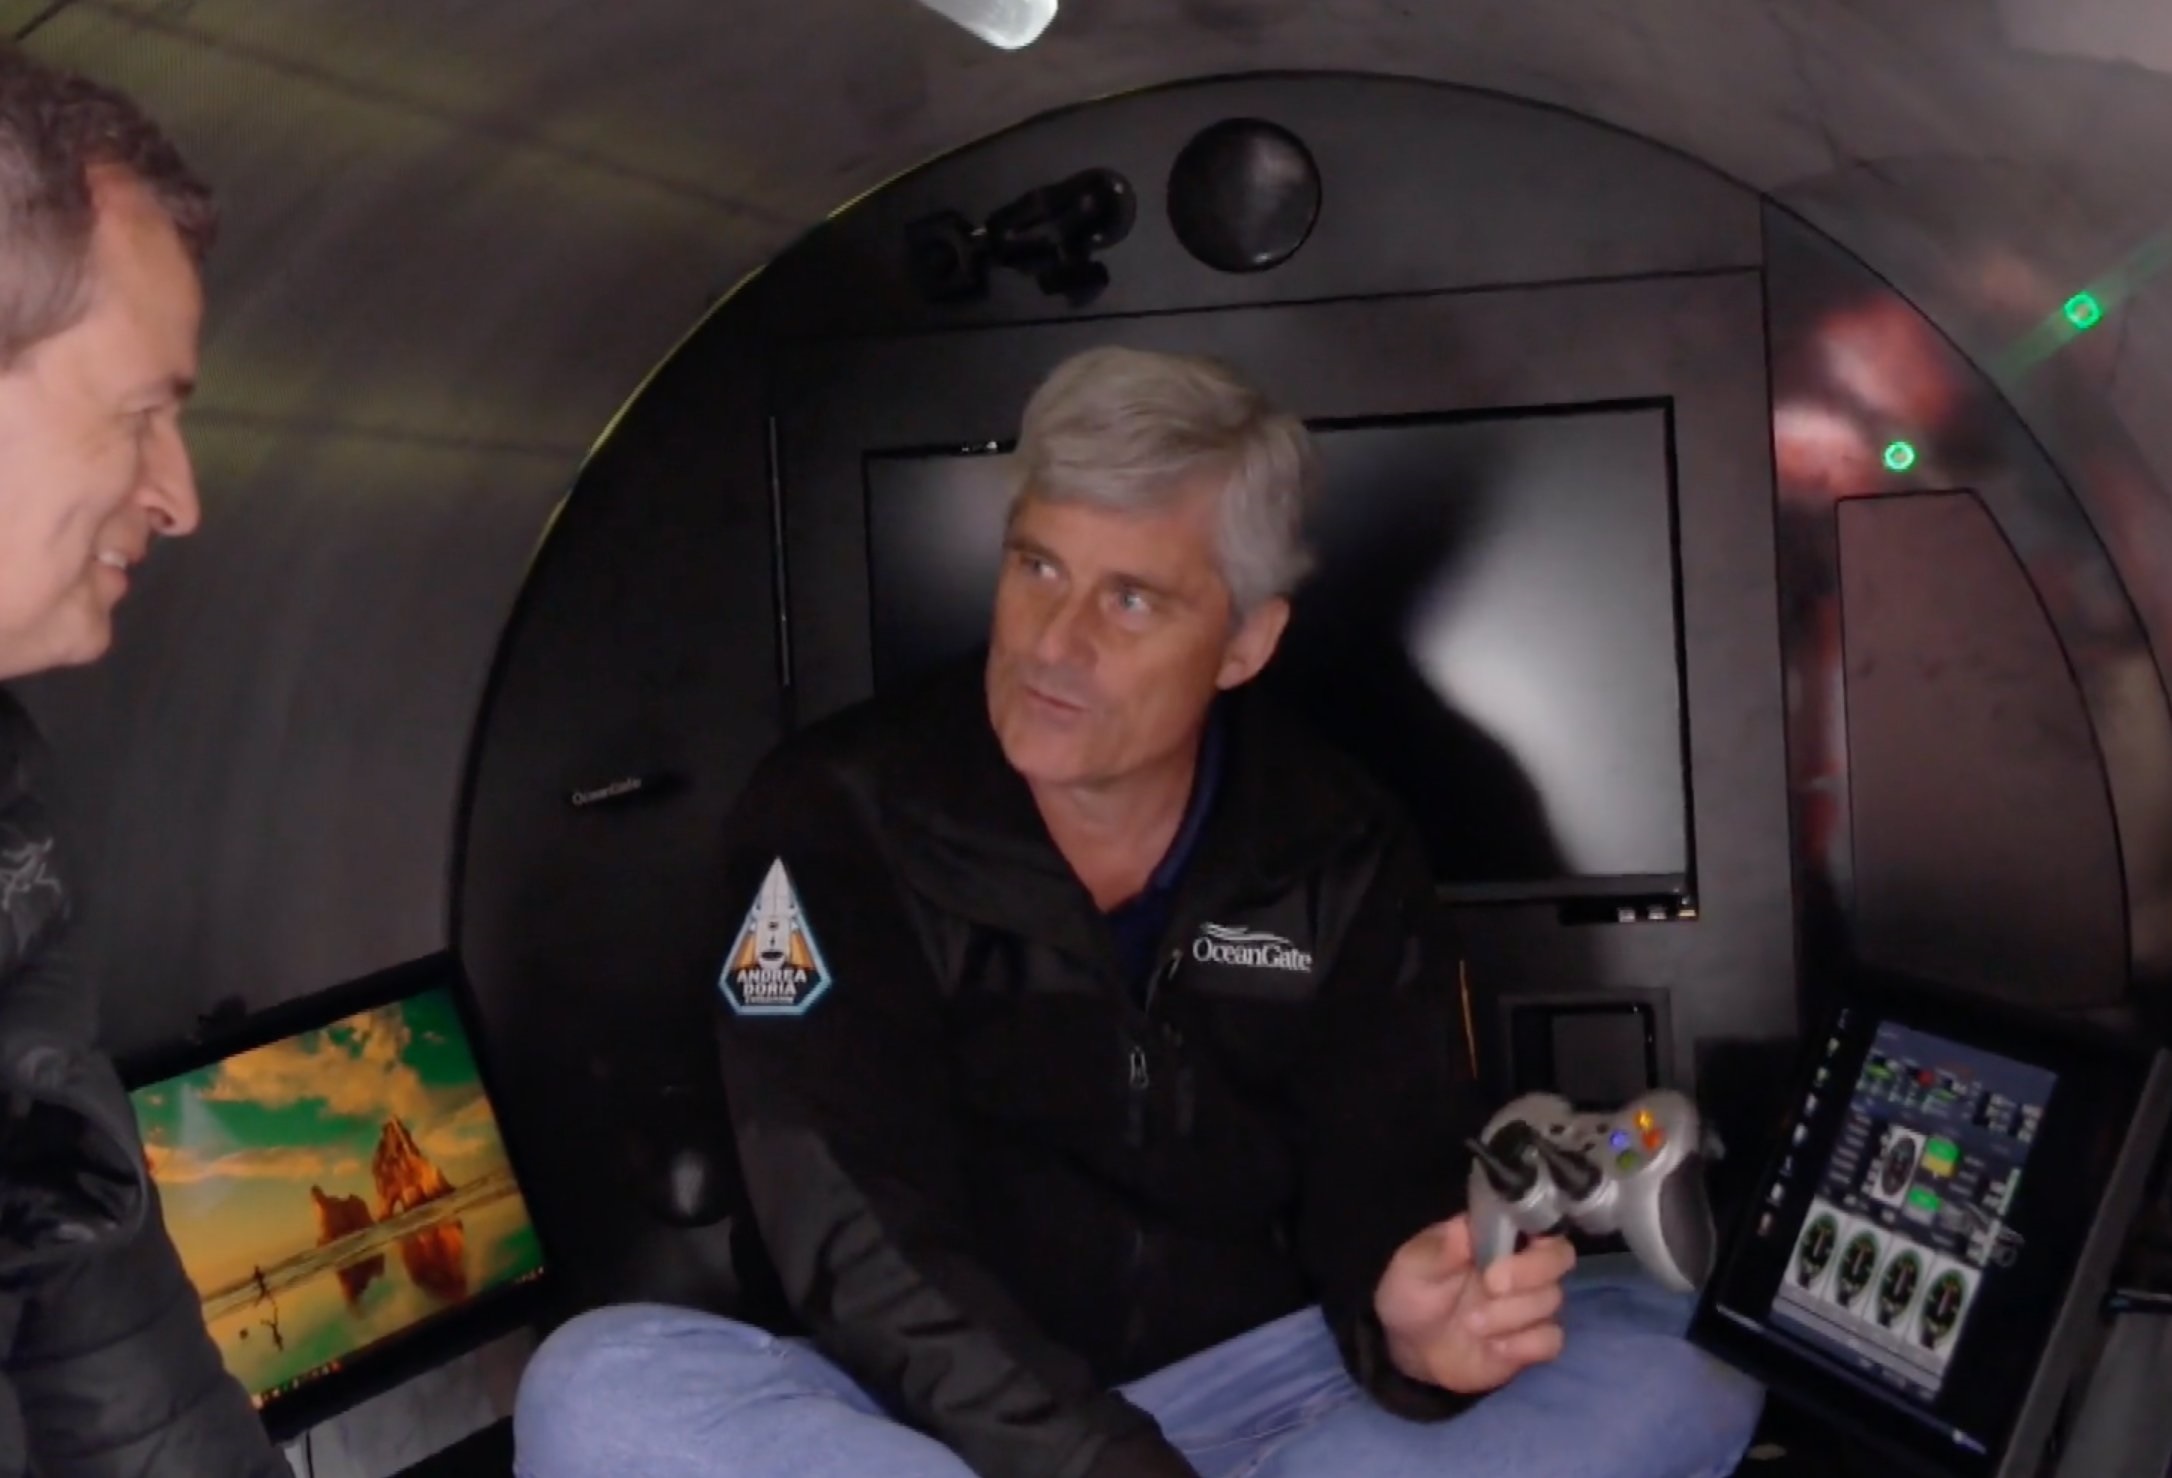 Ölen OceanGate CEO'su Stockton Rush, dalgıç aracına pilotluk yapmak için kullanılan logitech denetleyicisini gösteriyor